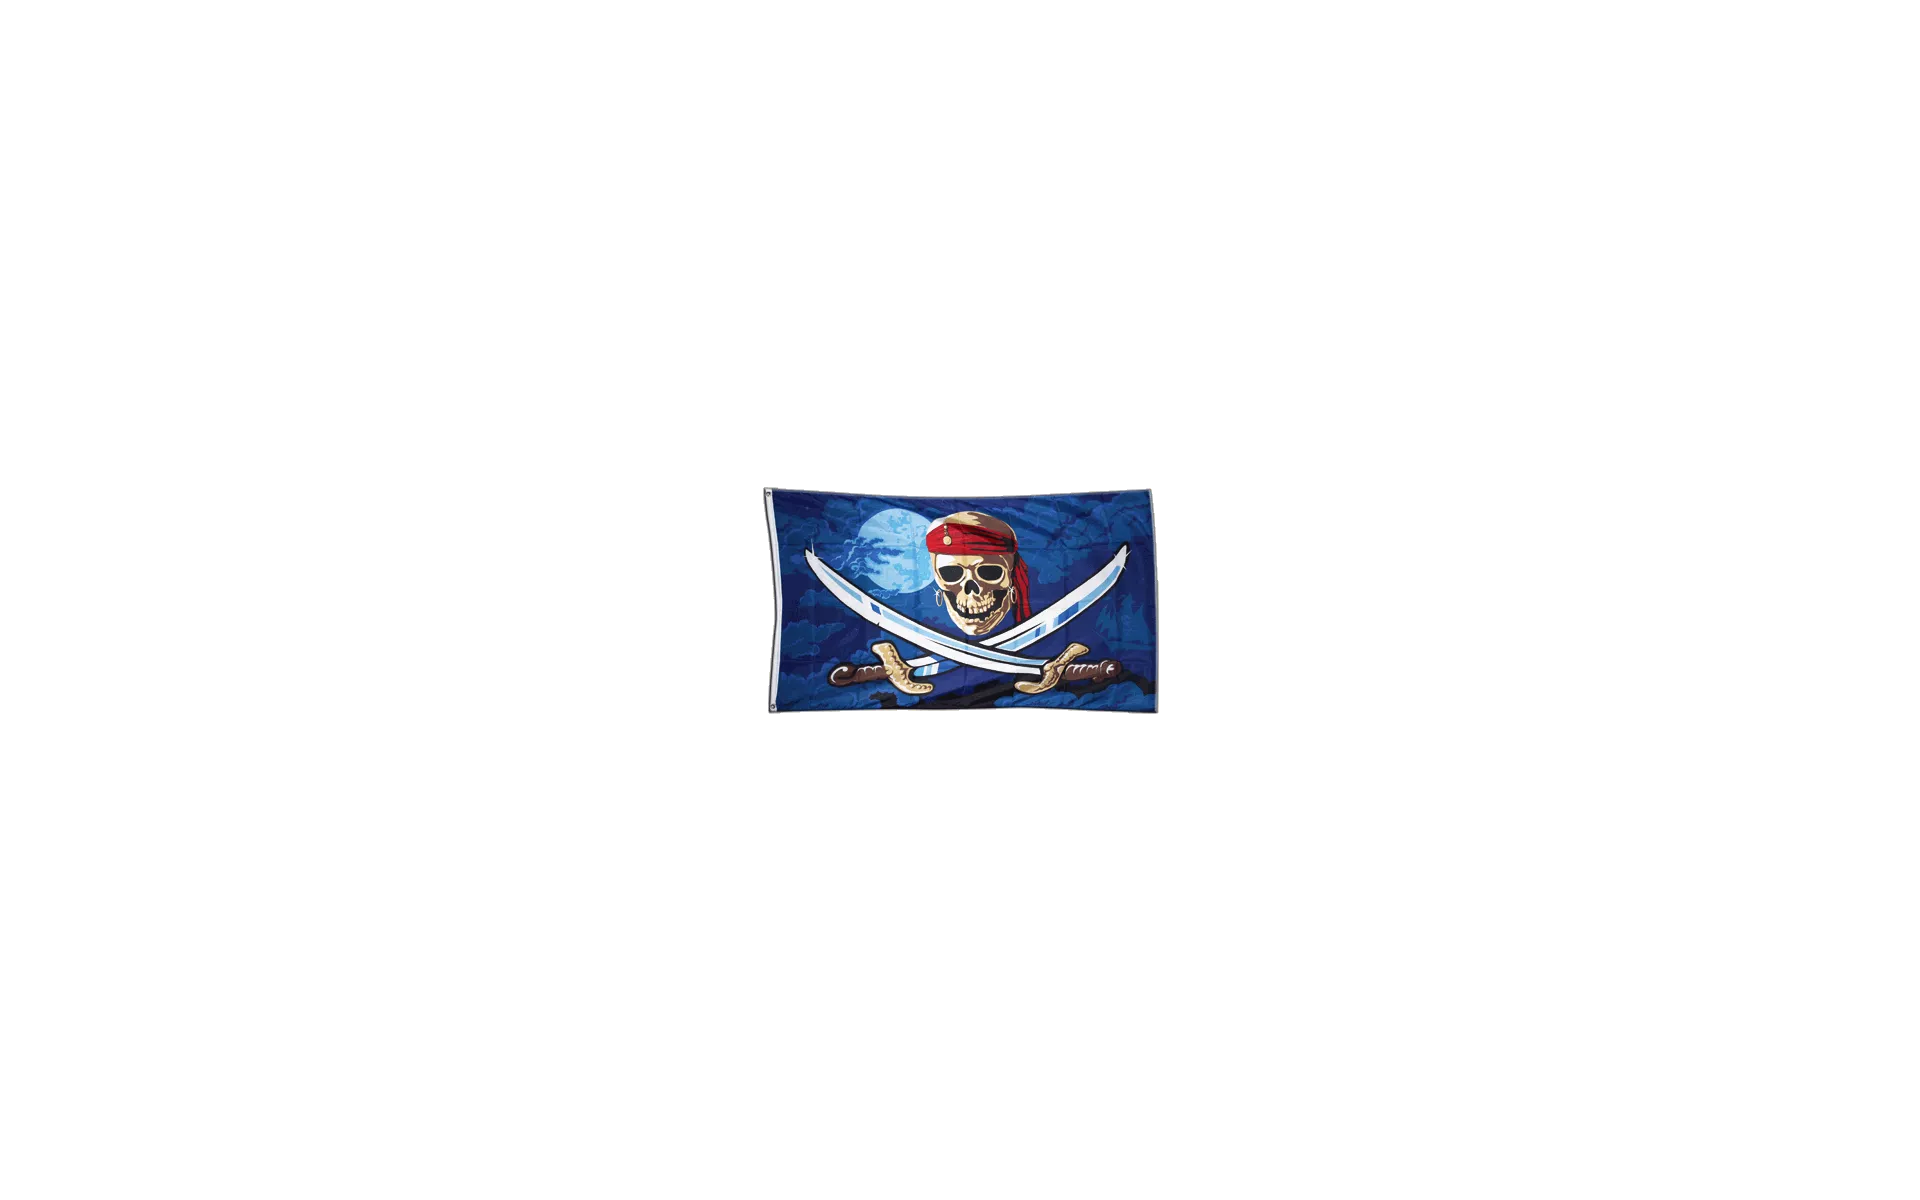 Pirat Fluch der Meere Flagge Fahne Hißflagge Hissfahne 150 x 90 cm NEU